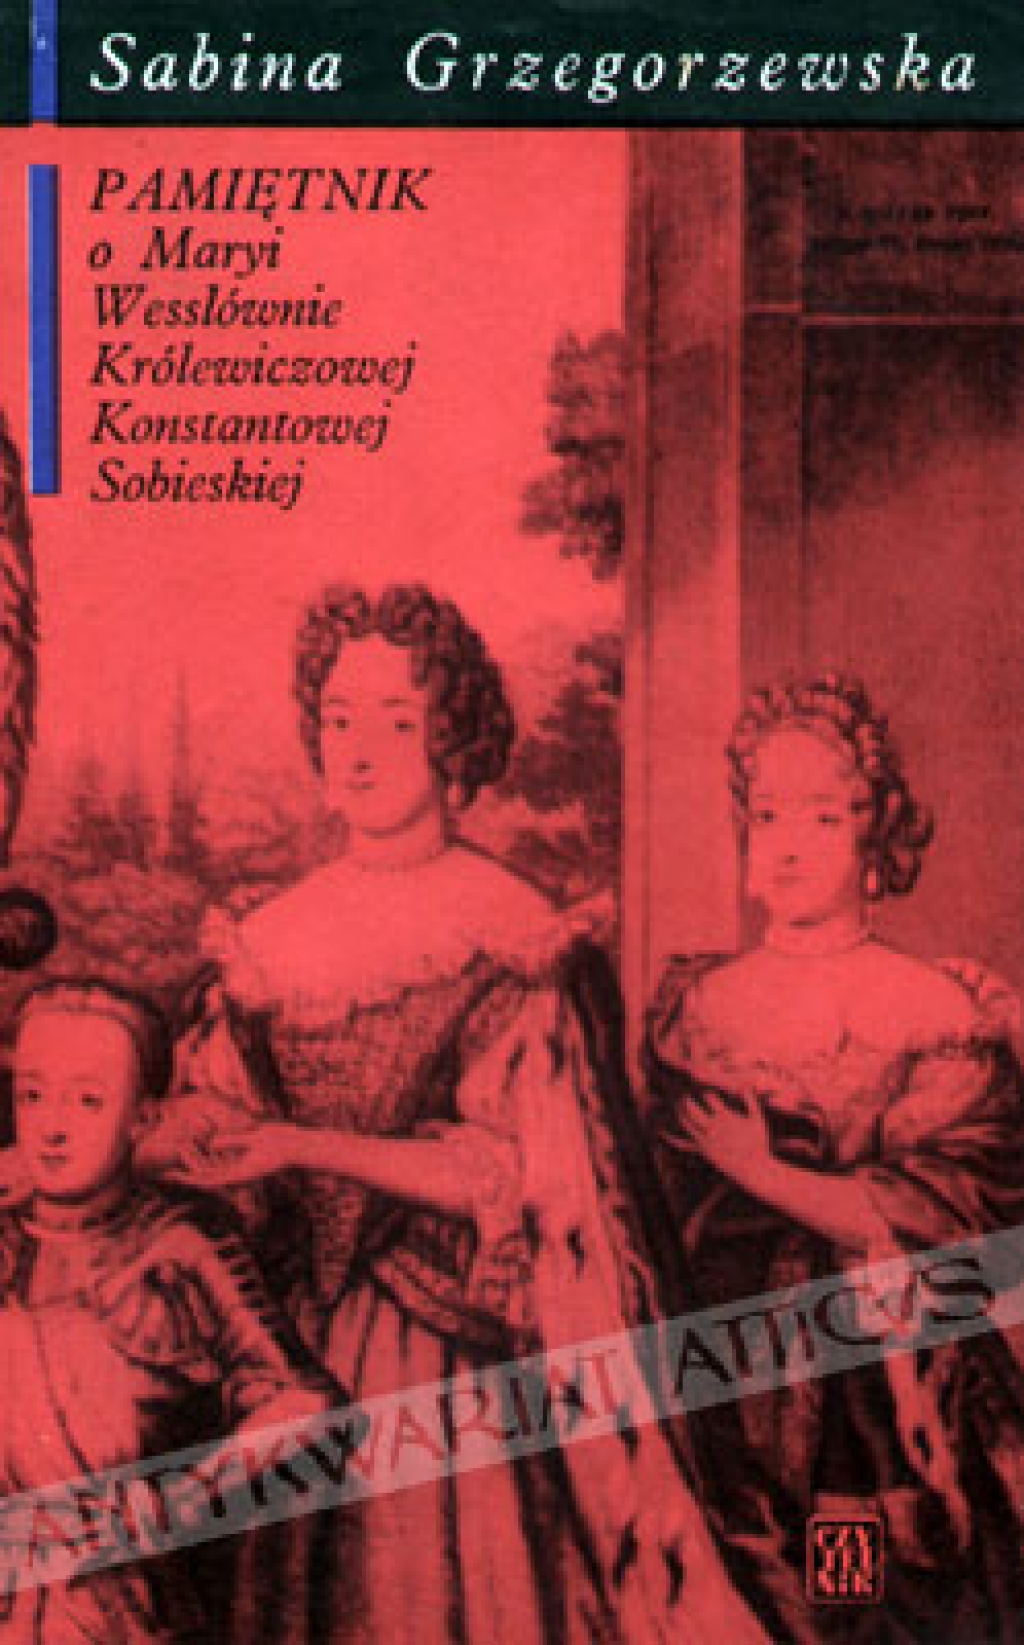 Pamiętnik o Maryi Wesslównie królewiczowej Konstantowej Sobieskiej spisany ze wspomnień rodzinnych